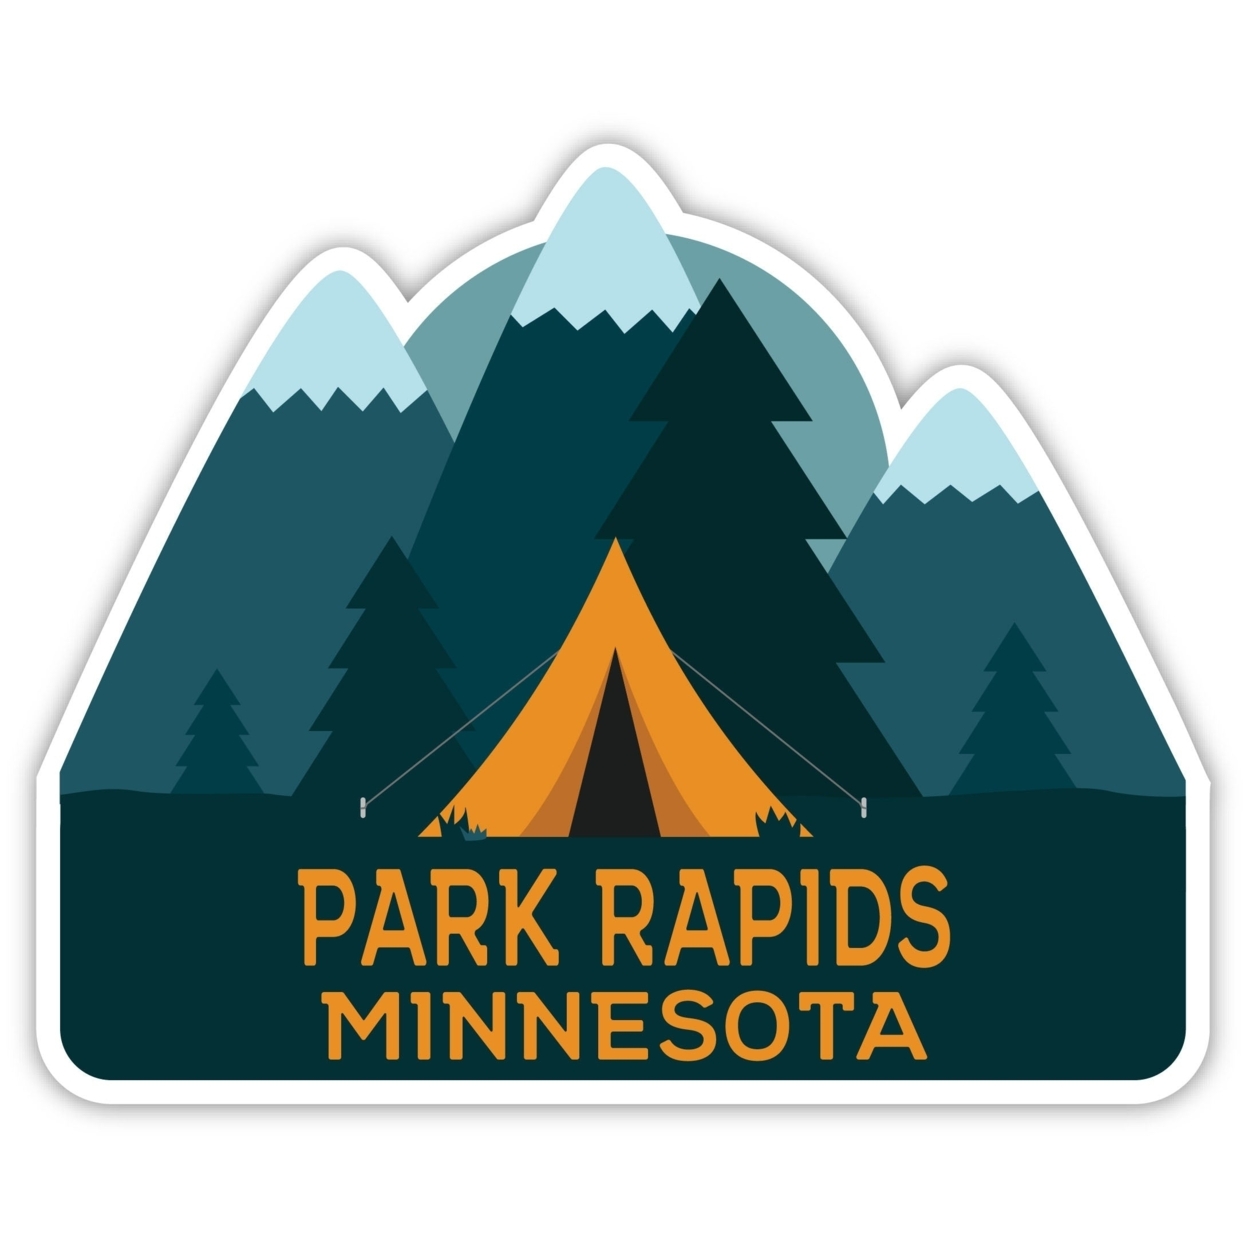 Park Rapids Minnesota Souvenir Decorative Stickers (Choose Theme And Size) - Single Unit, 2-Inch, Tent